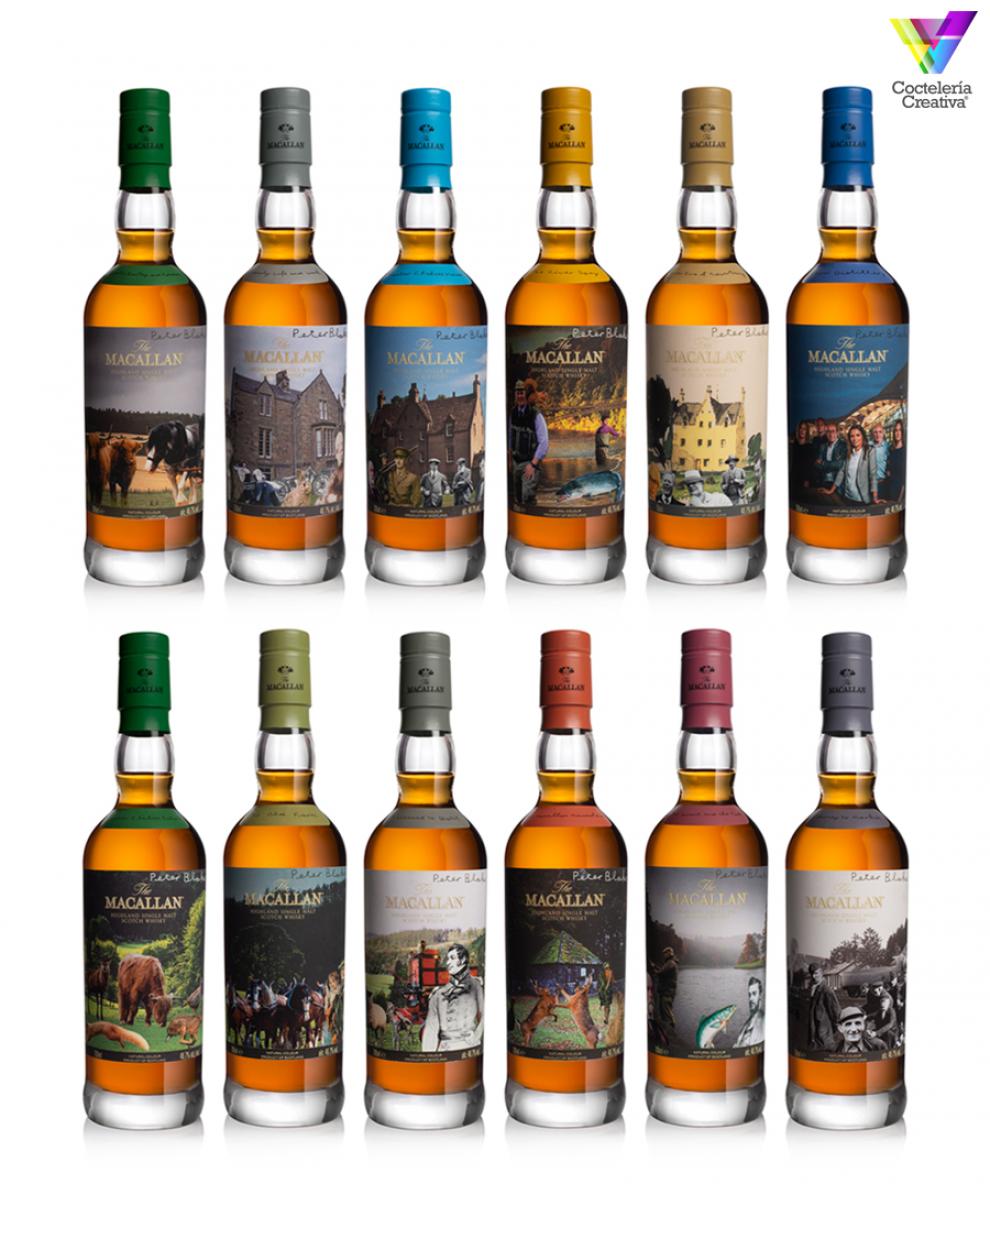 imagen de la colección de whiskyes the macallan y el artista sir peter blake